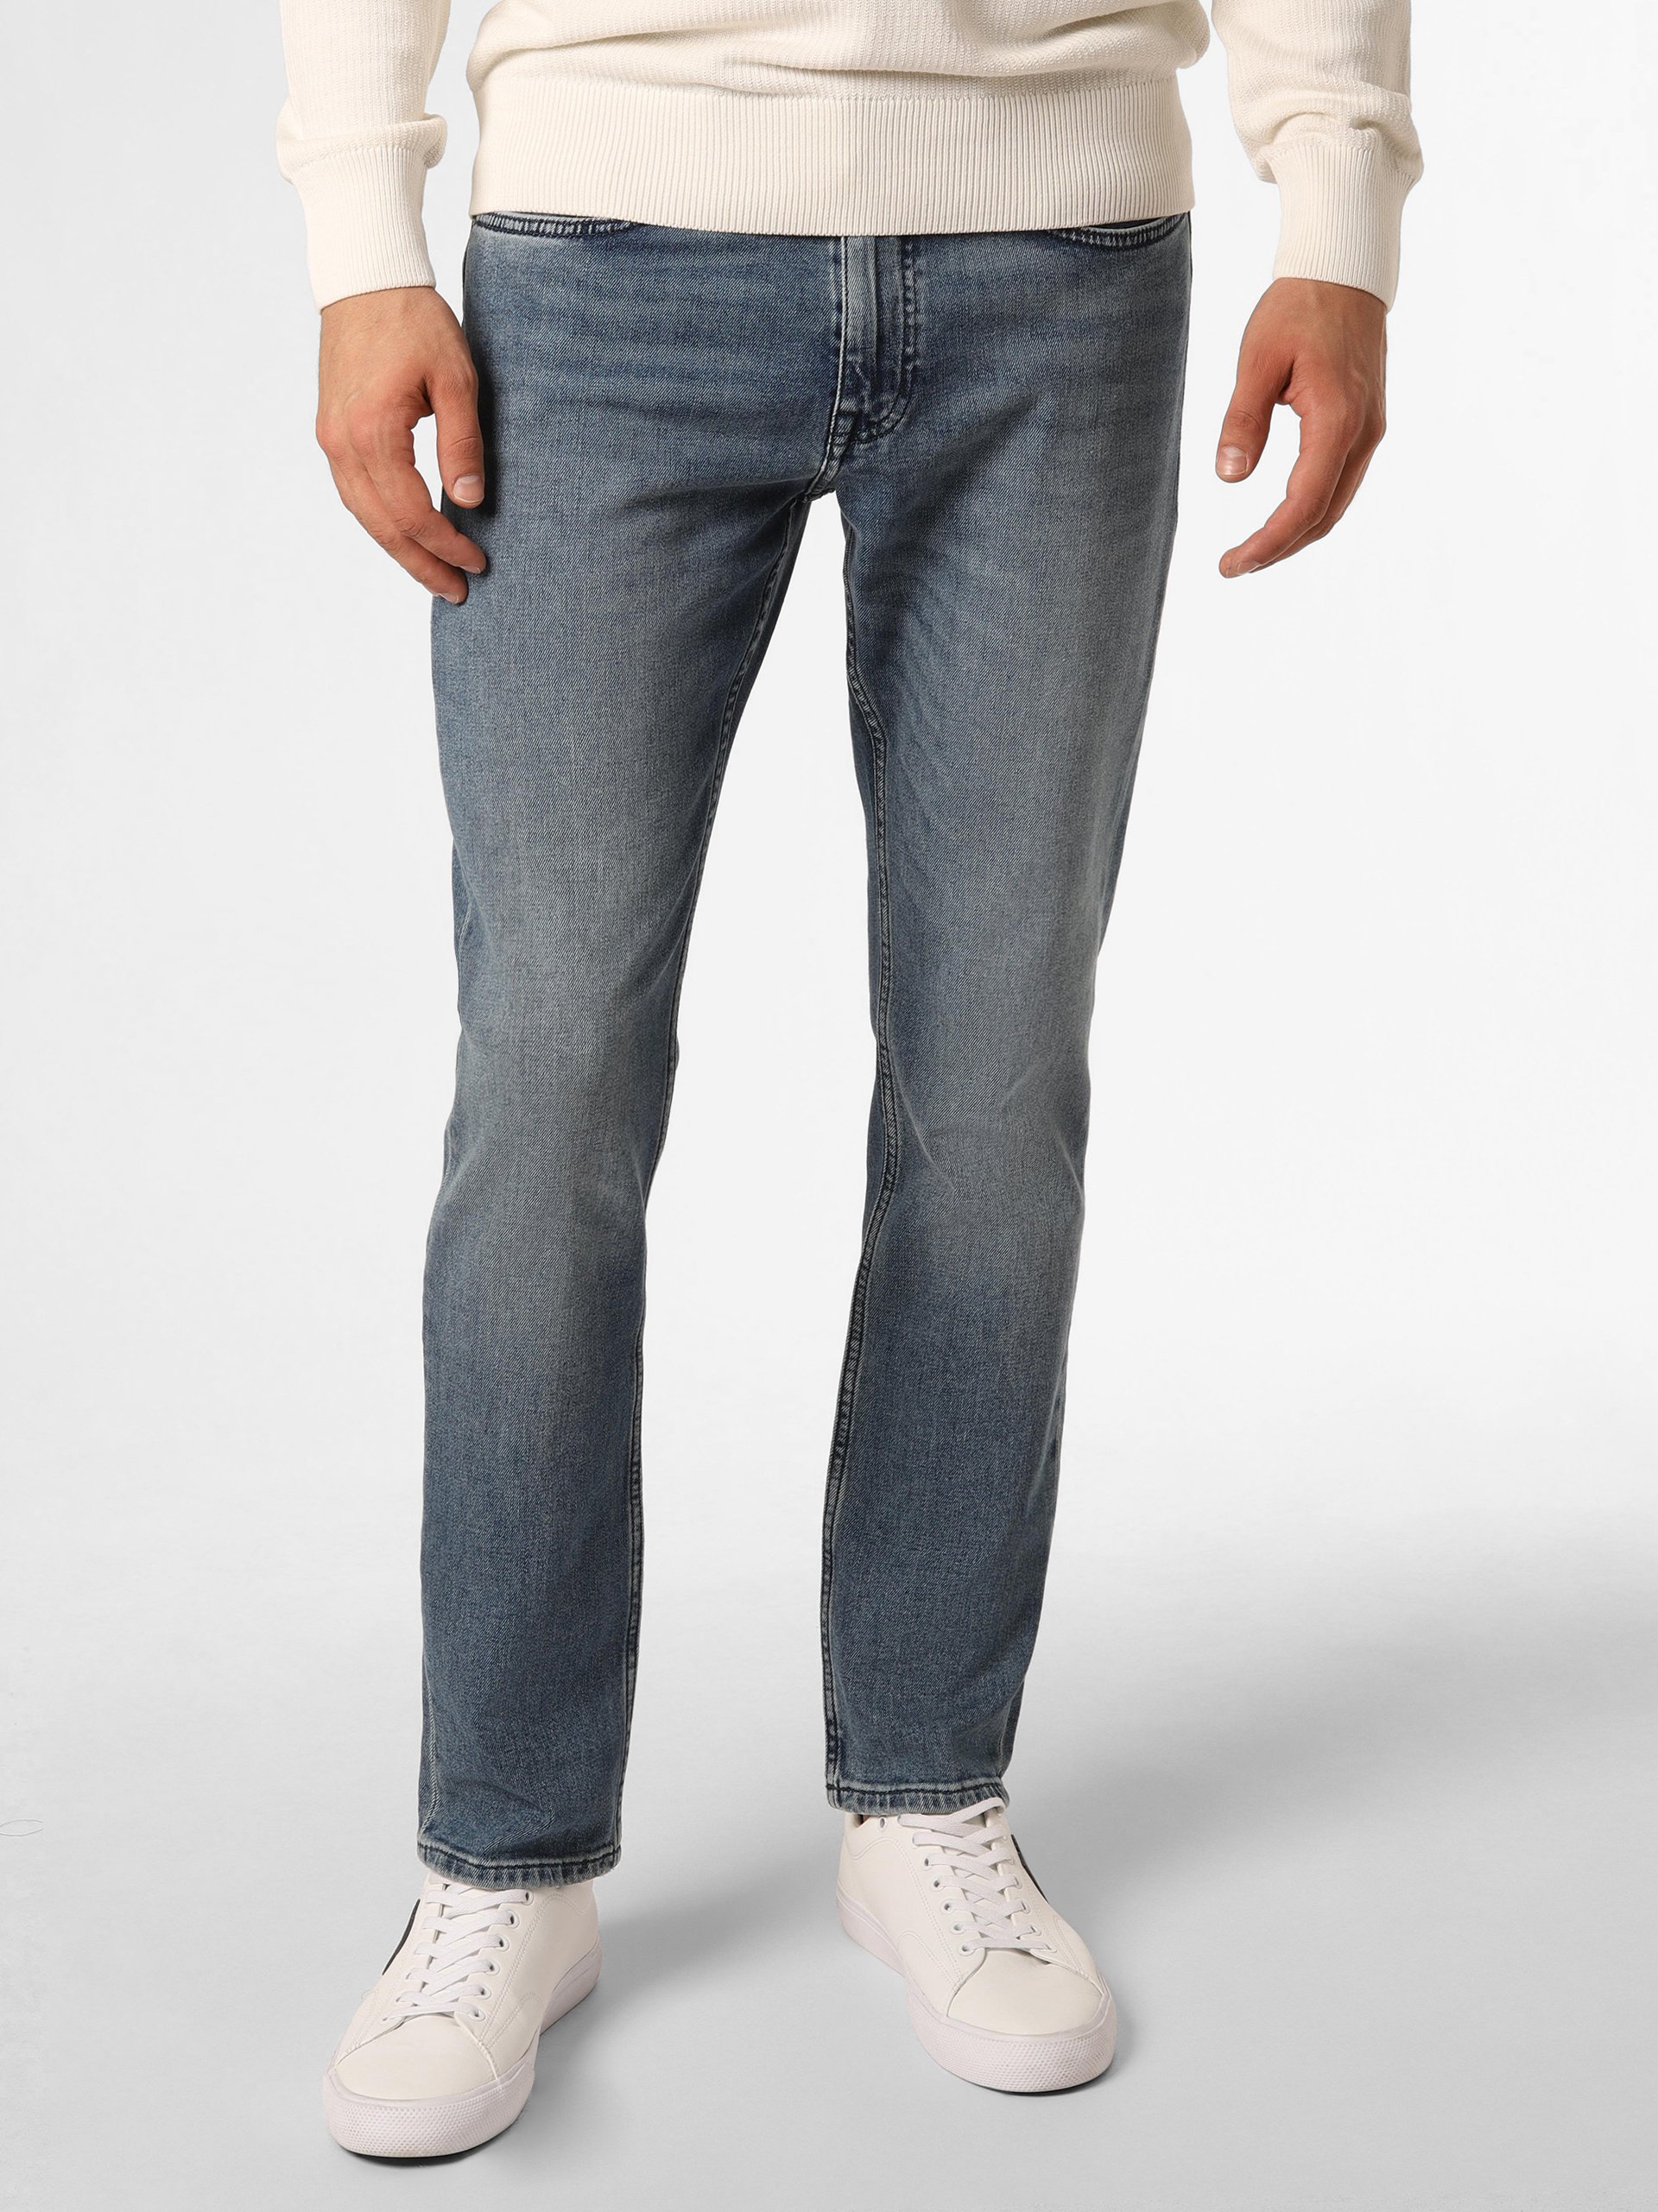 BOSS Orange Herren Jeans - Delaware online kaufen